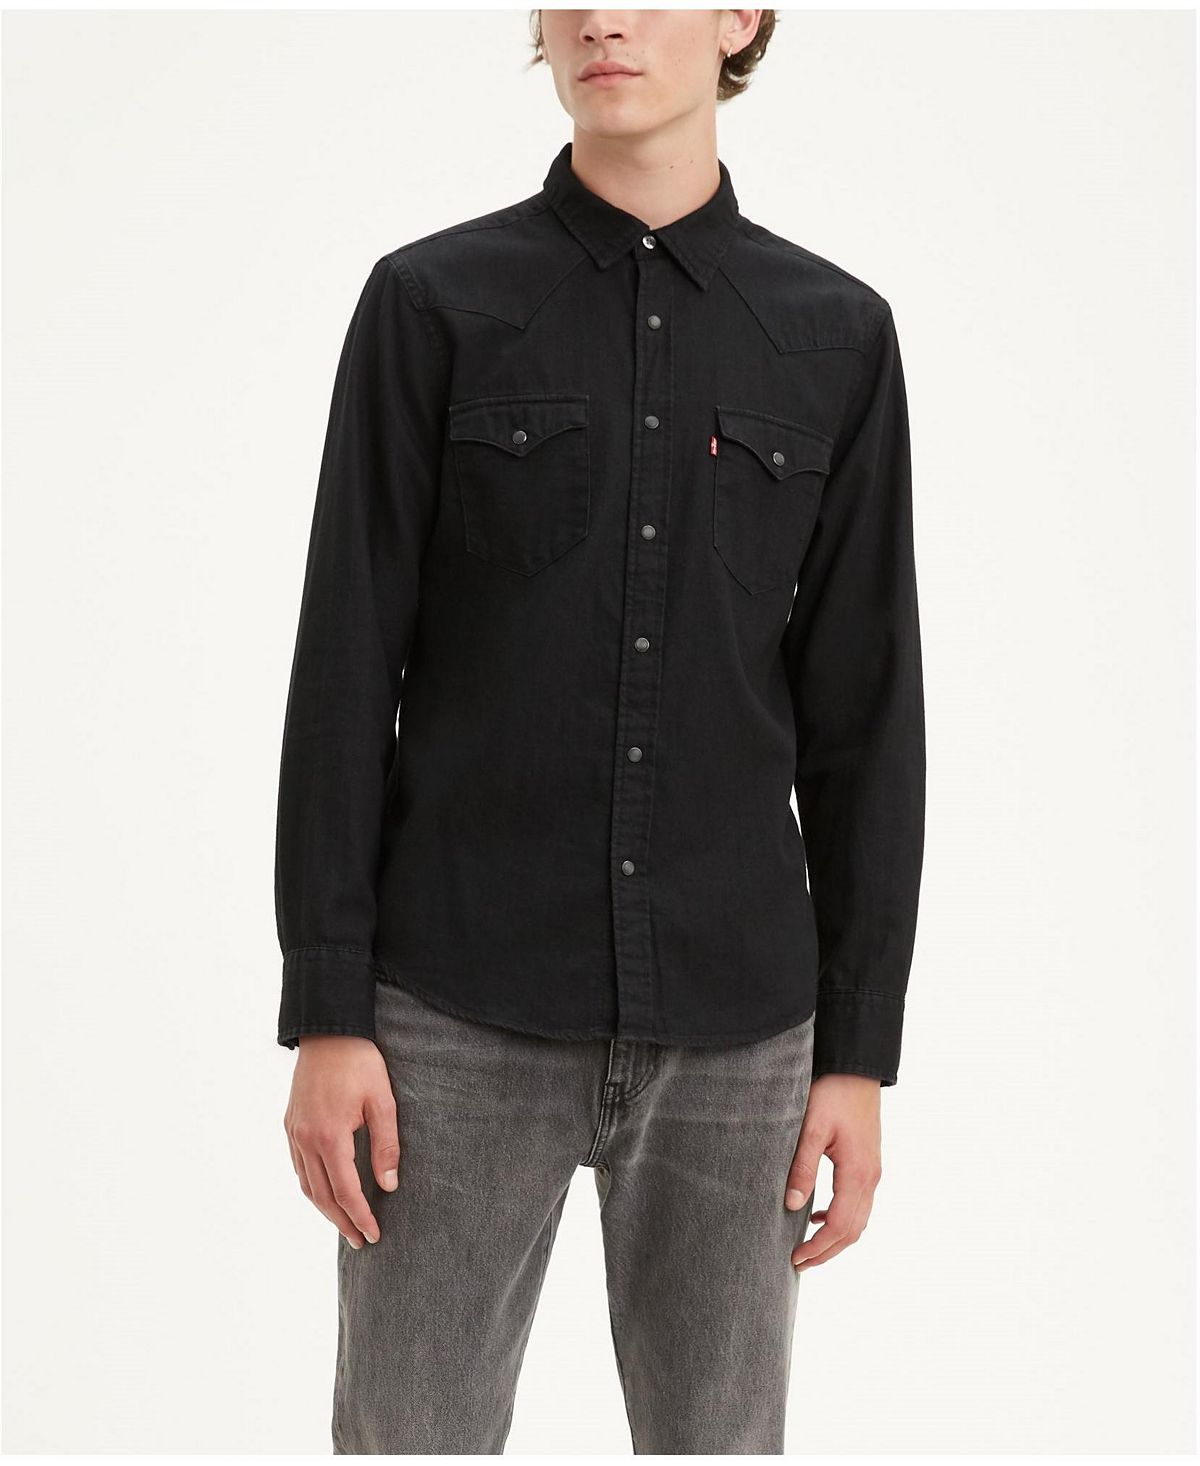 Мужская классическая чистая джинсовая рубашка стандартного кроя в стиле вестерн Levi's, мульти цена и фото